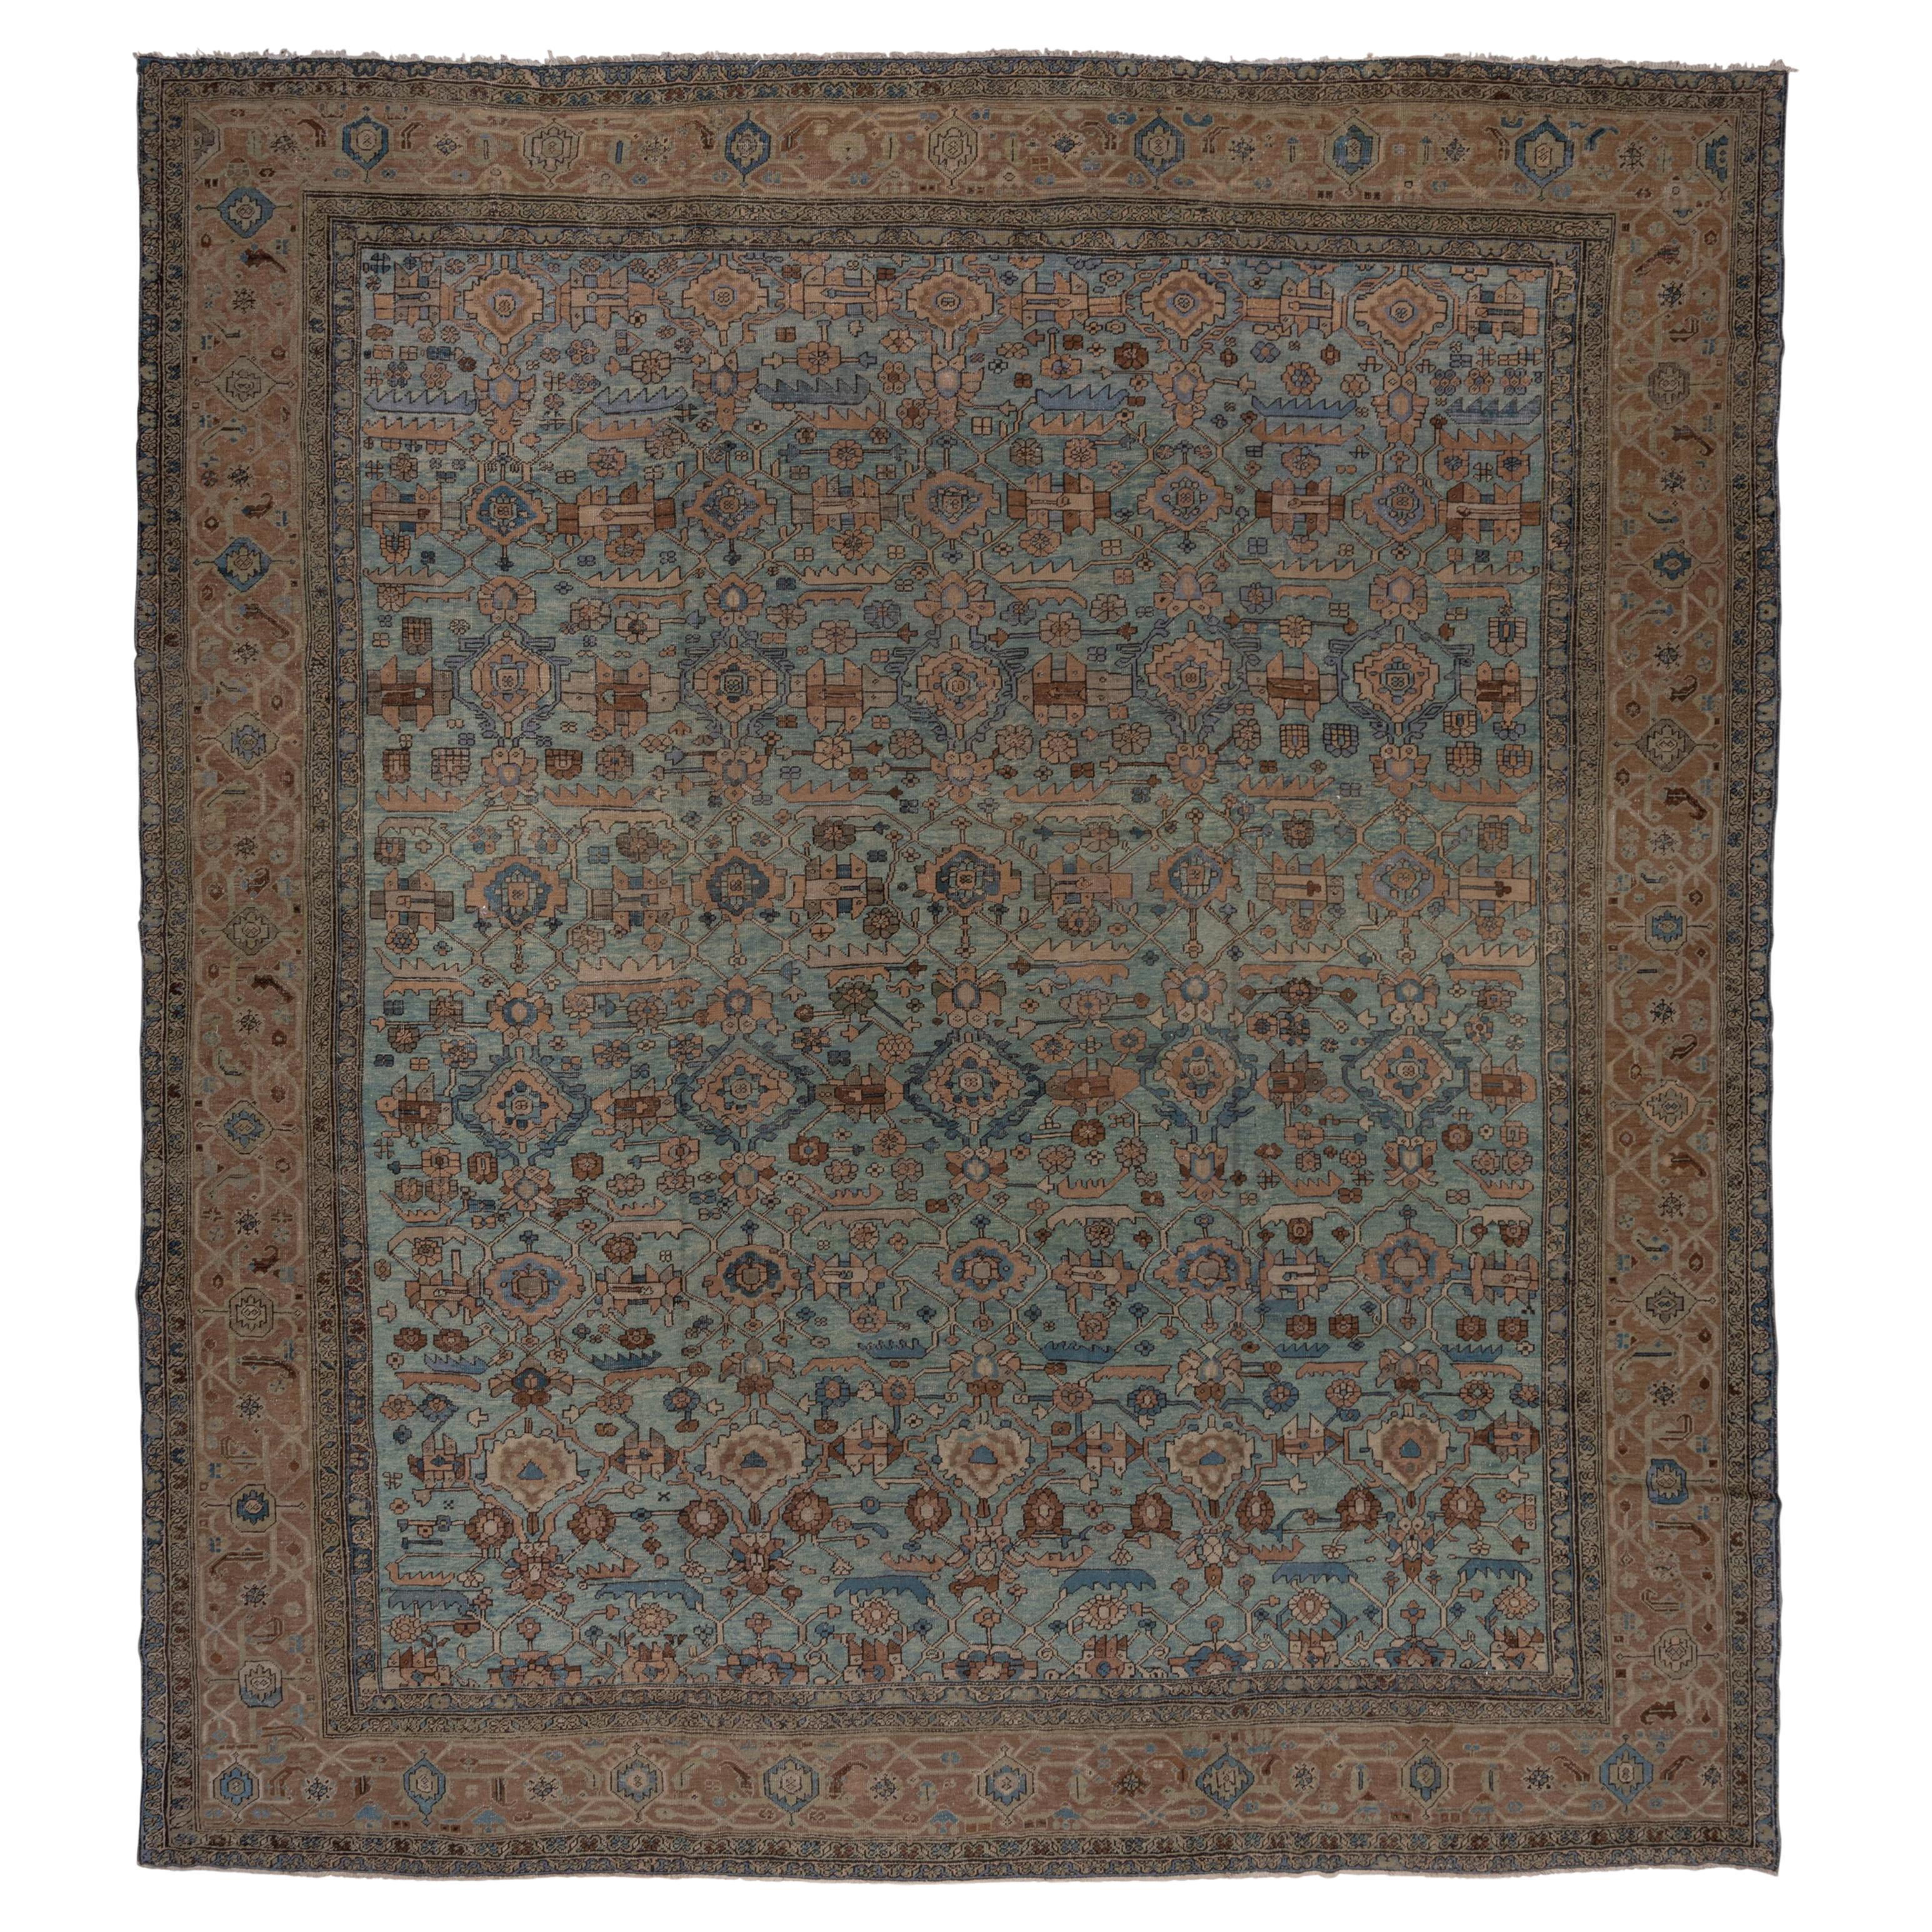 Antique Square Heriz Carpet, Oversized, circa 1900s